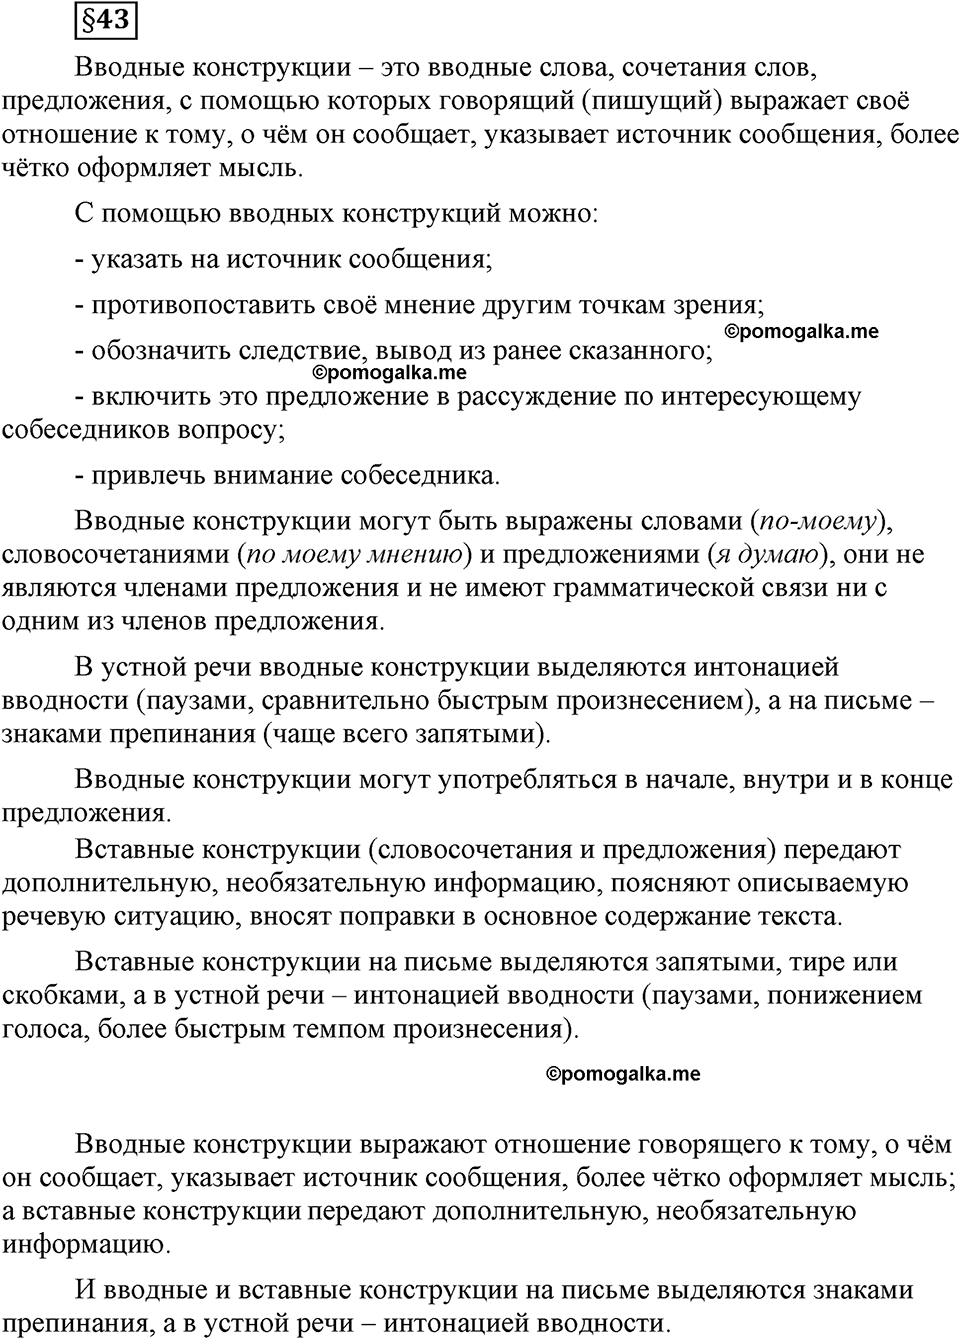 страница 247 вопросы к §43 русский язык 8 класс Львова, Львов 2014 год